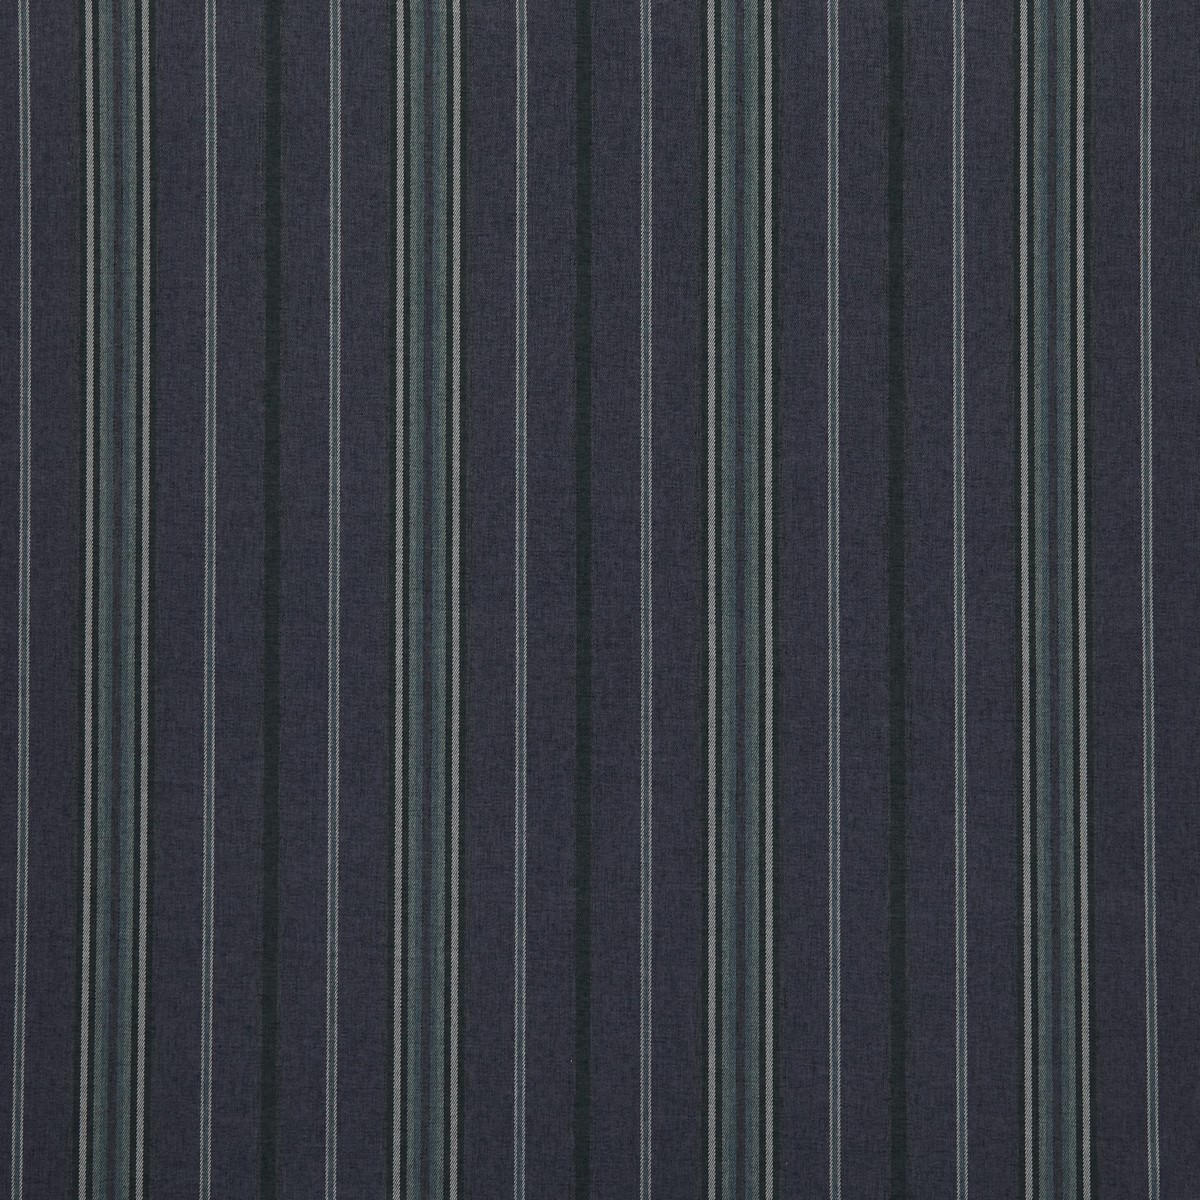 Haworth Indigo Fabric by iLiv